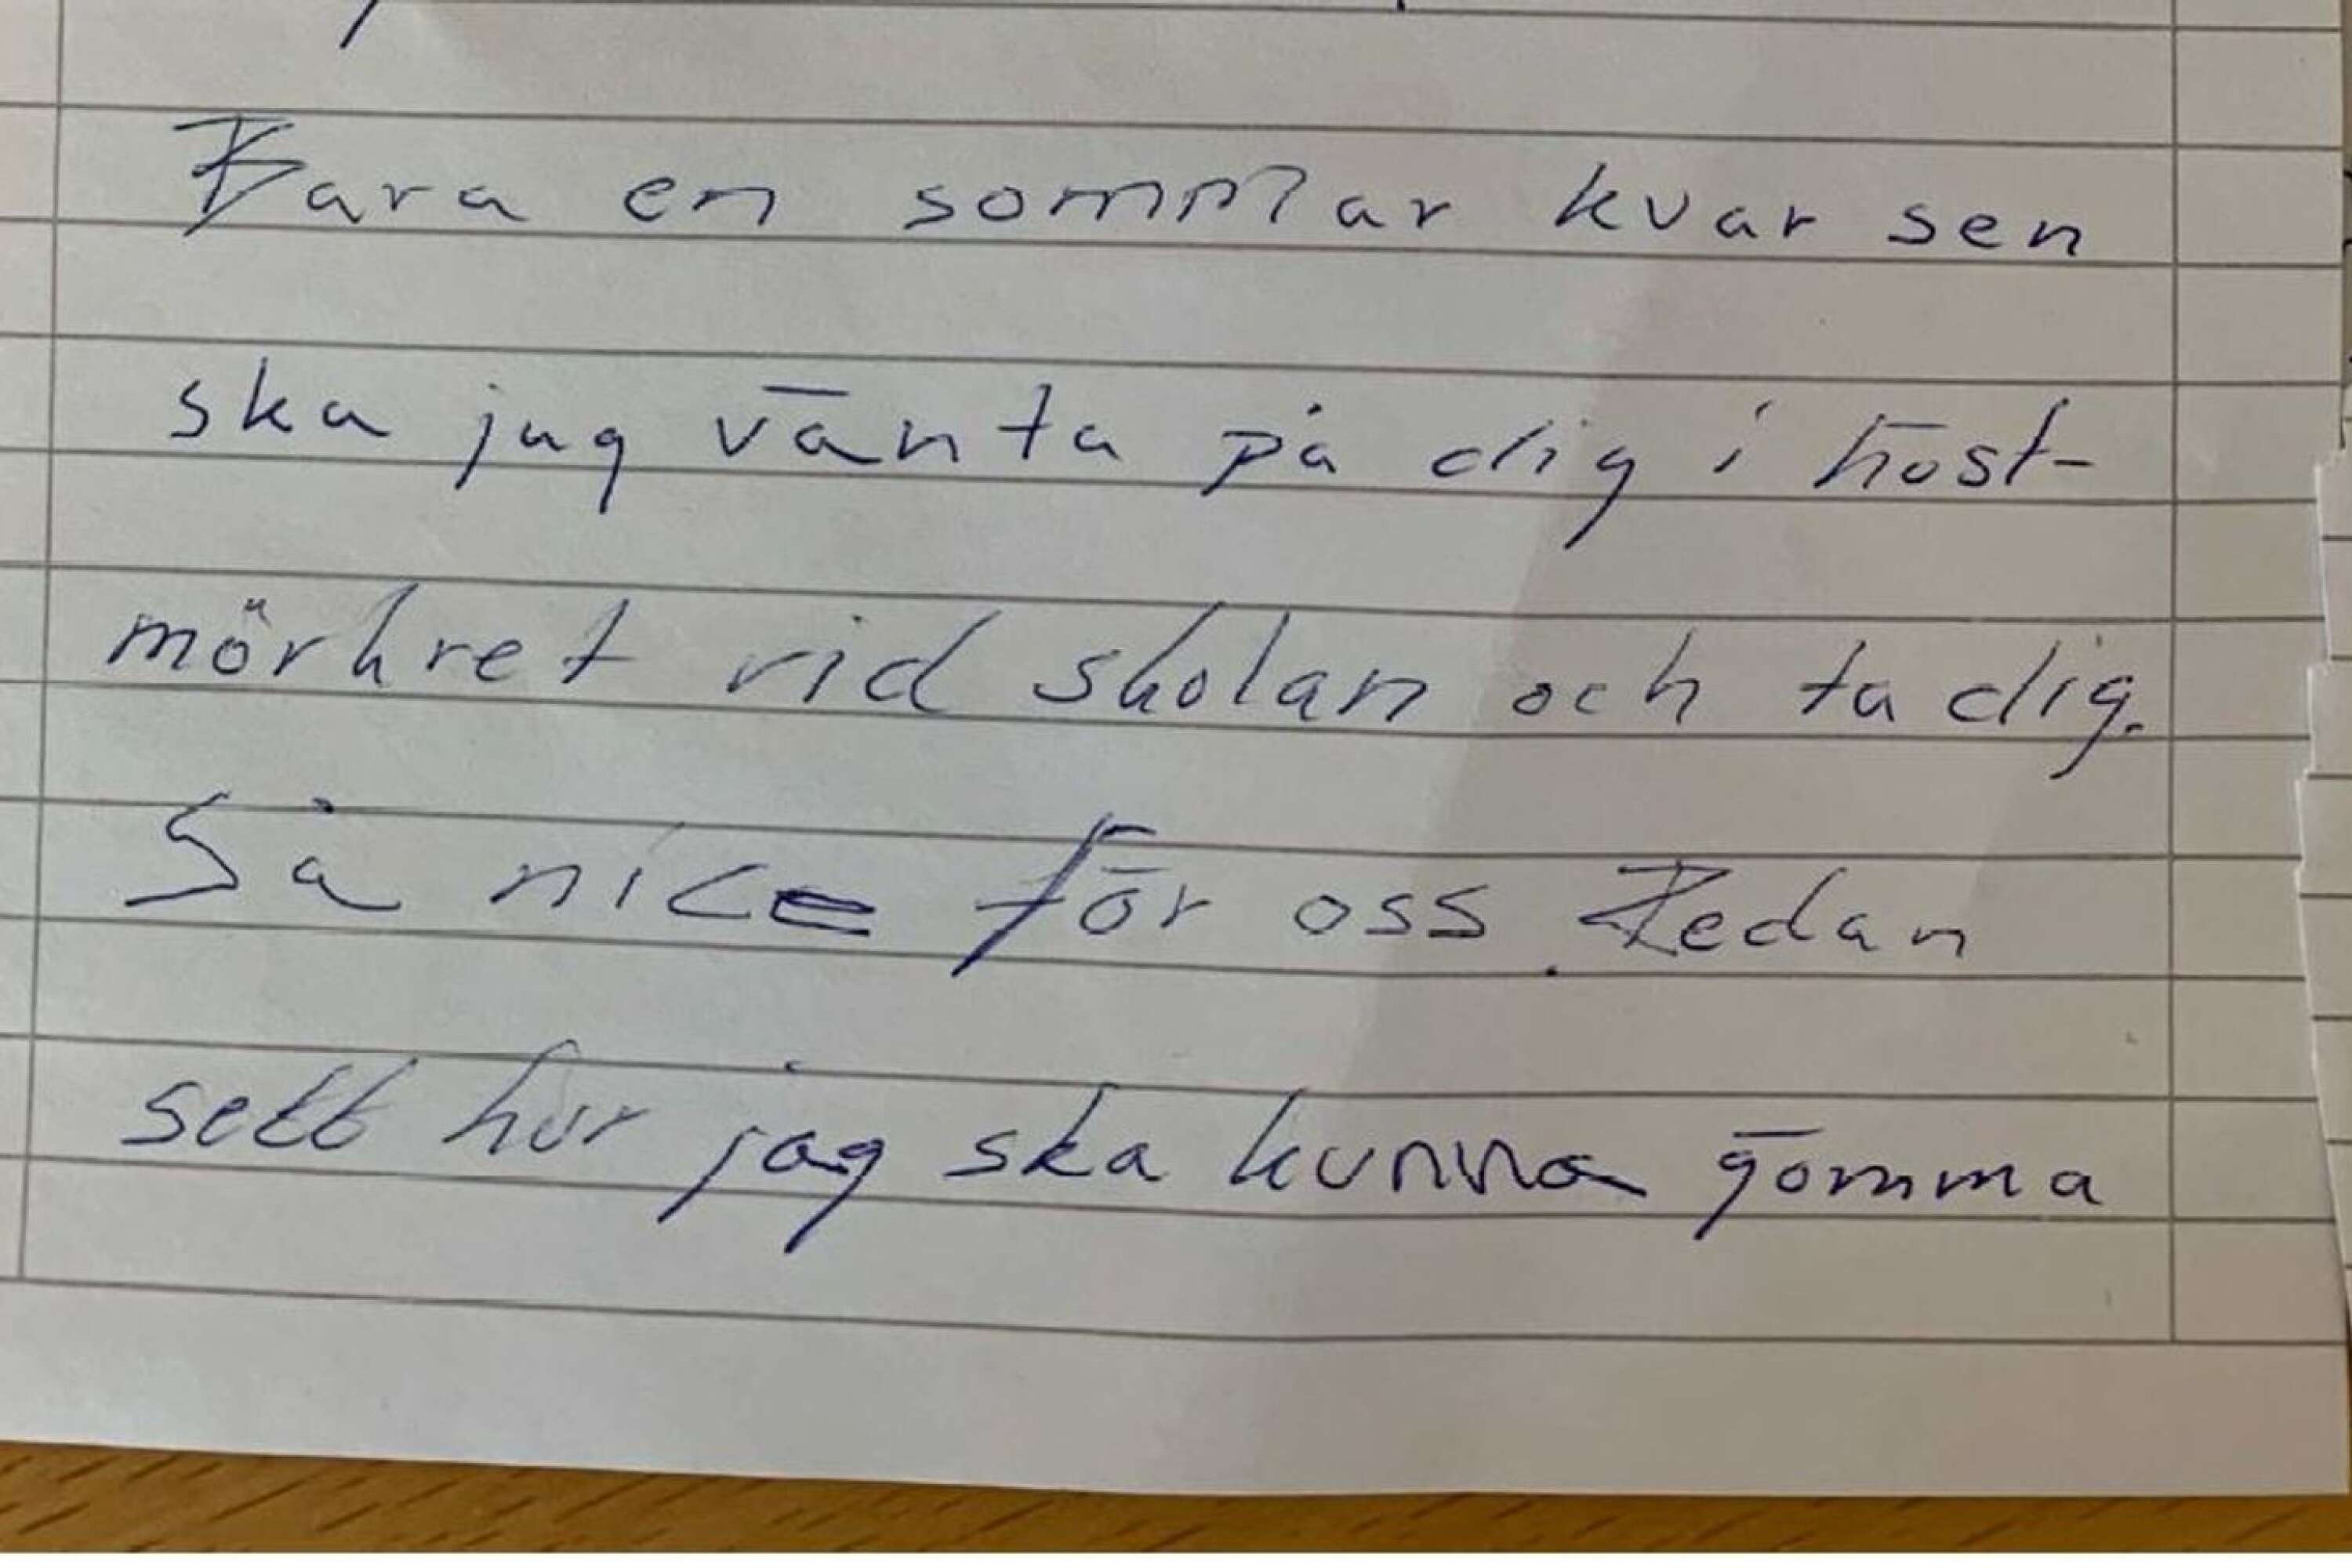 Den värmländske läraren försökte skrämma en blivande kollega genom att skicka anonyma brev där han hotade med våldtäkt.